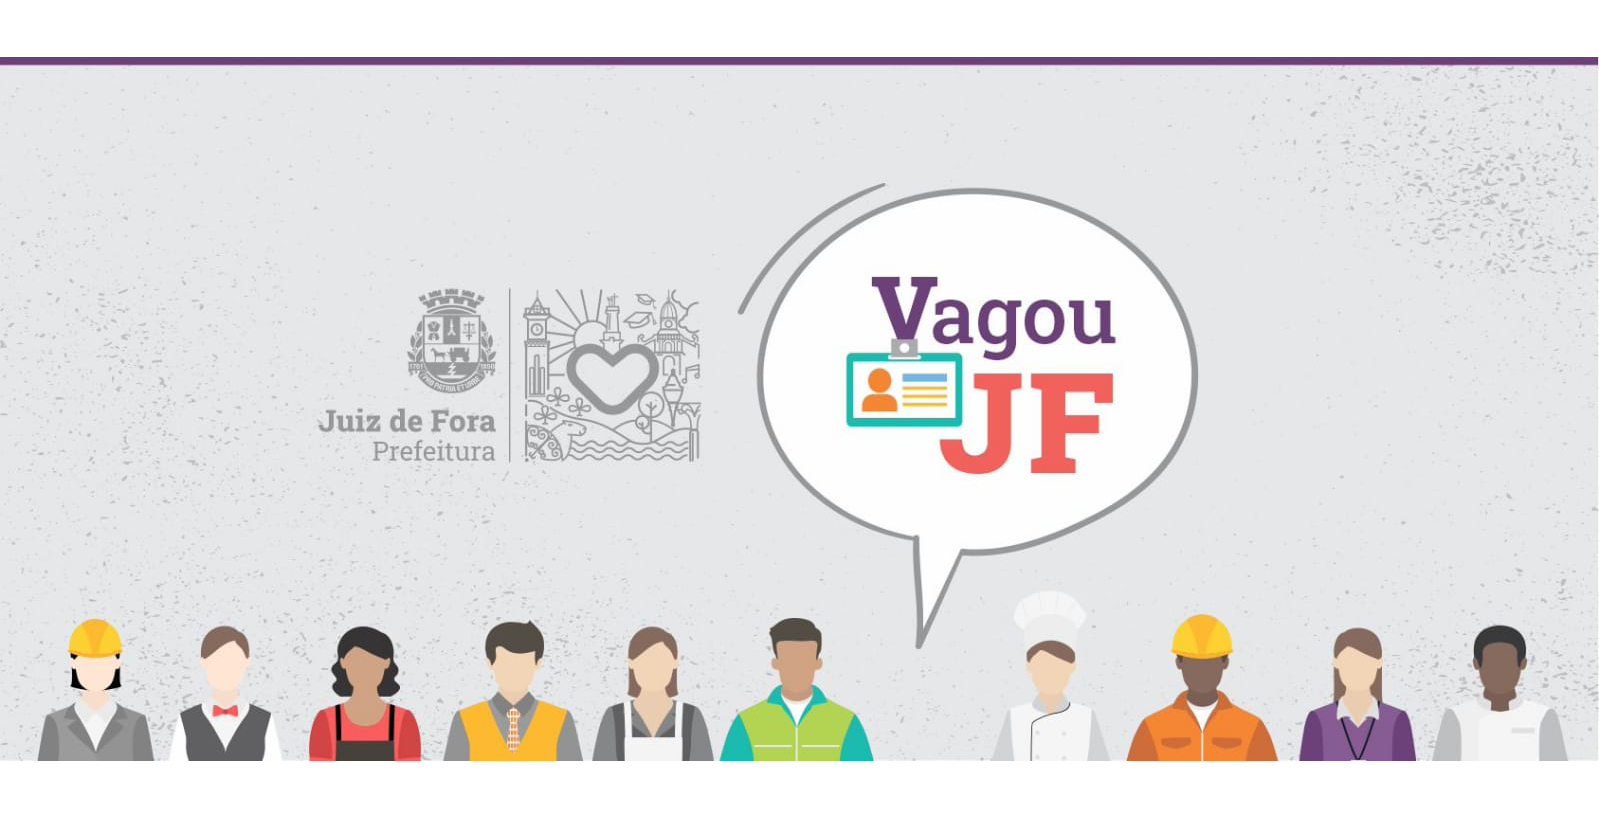 Portal de Notcias PJF | Vagou JF da PJF tem vagas abertas para pedreiro e outras oportunidades | SEDIC - 5/10/2022